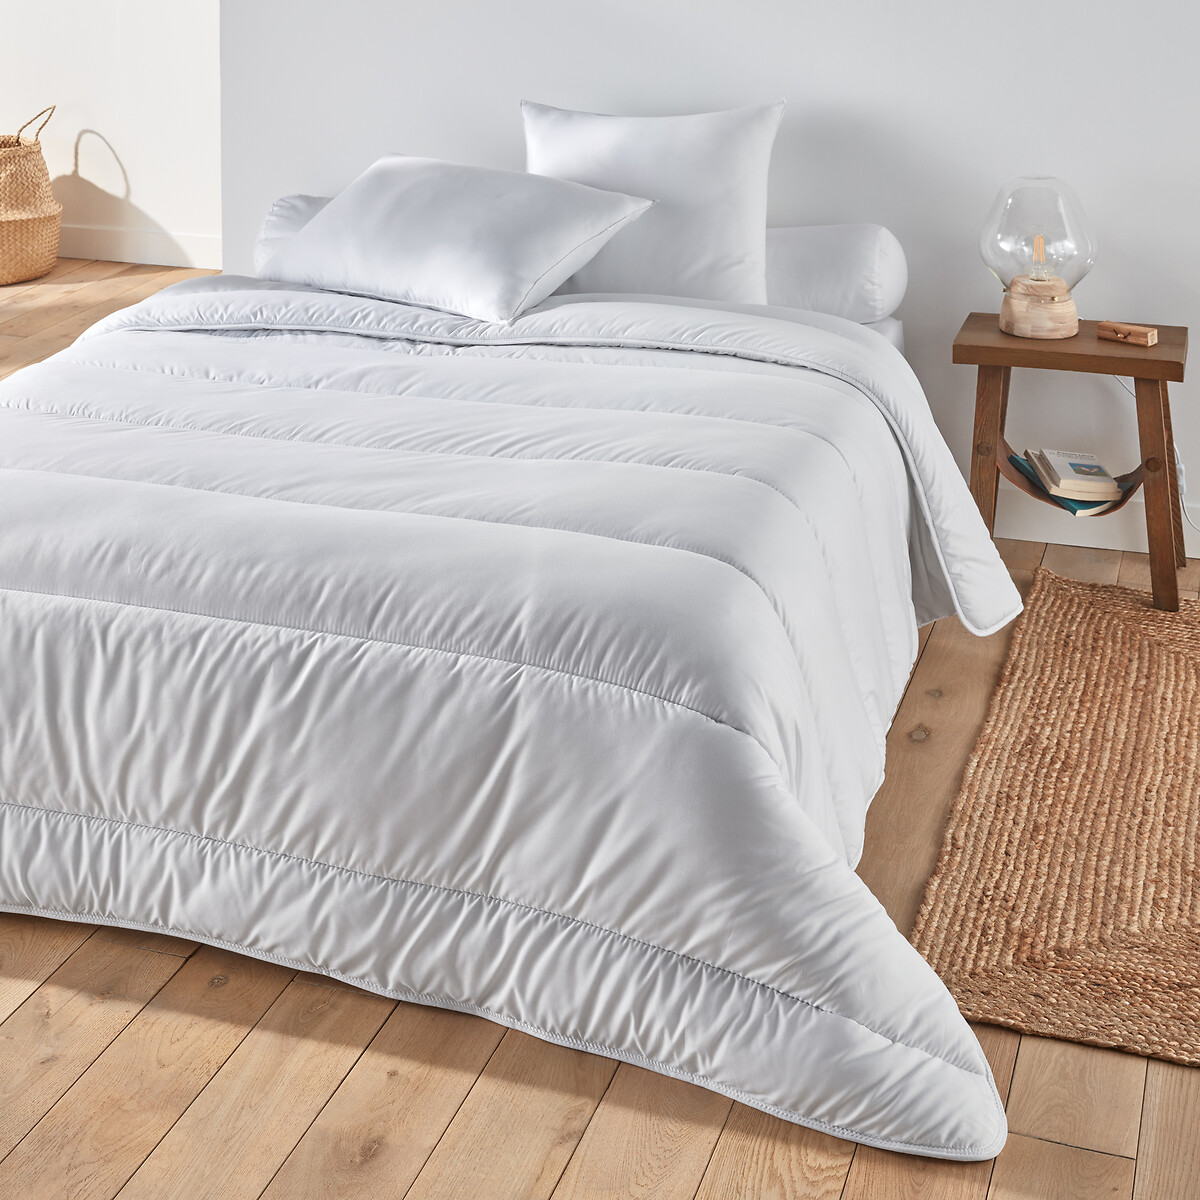 Одеяло Синтетическое с обработкой BI-OME 500 гм 240 x 220 см белый